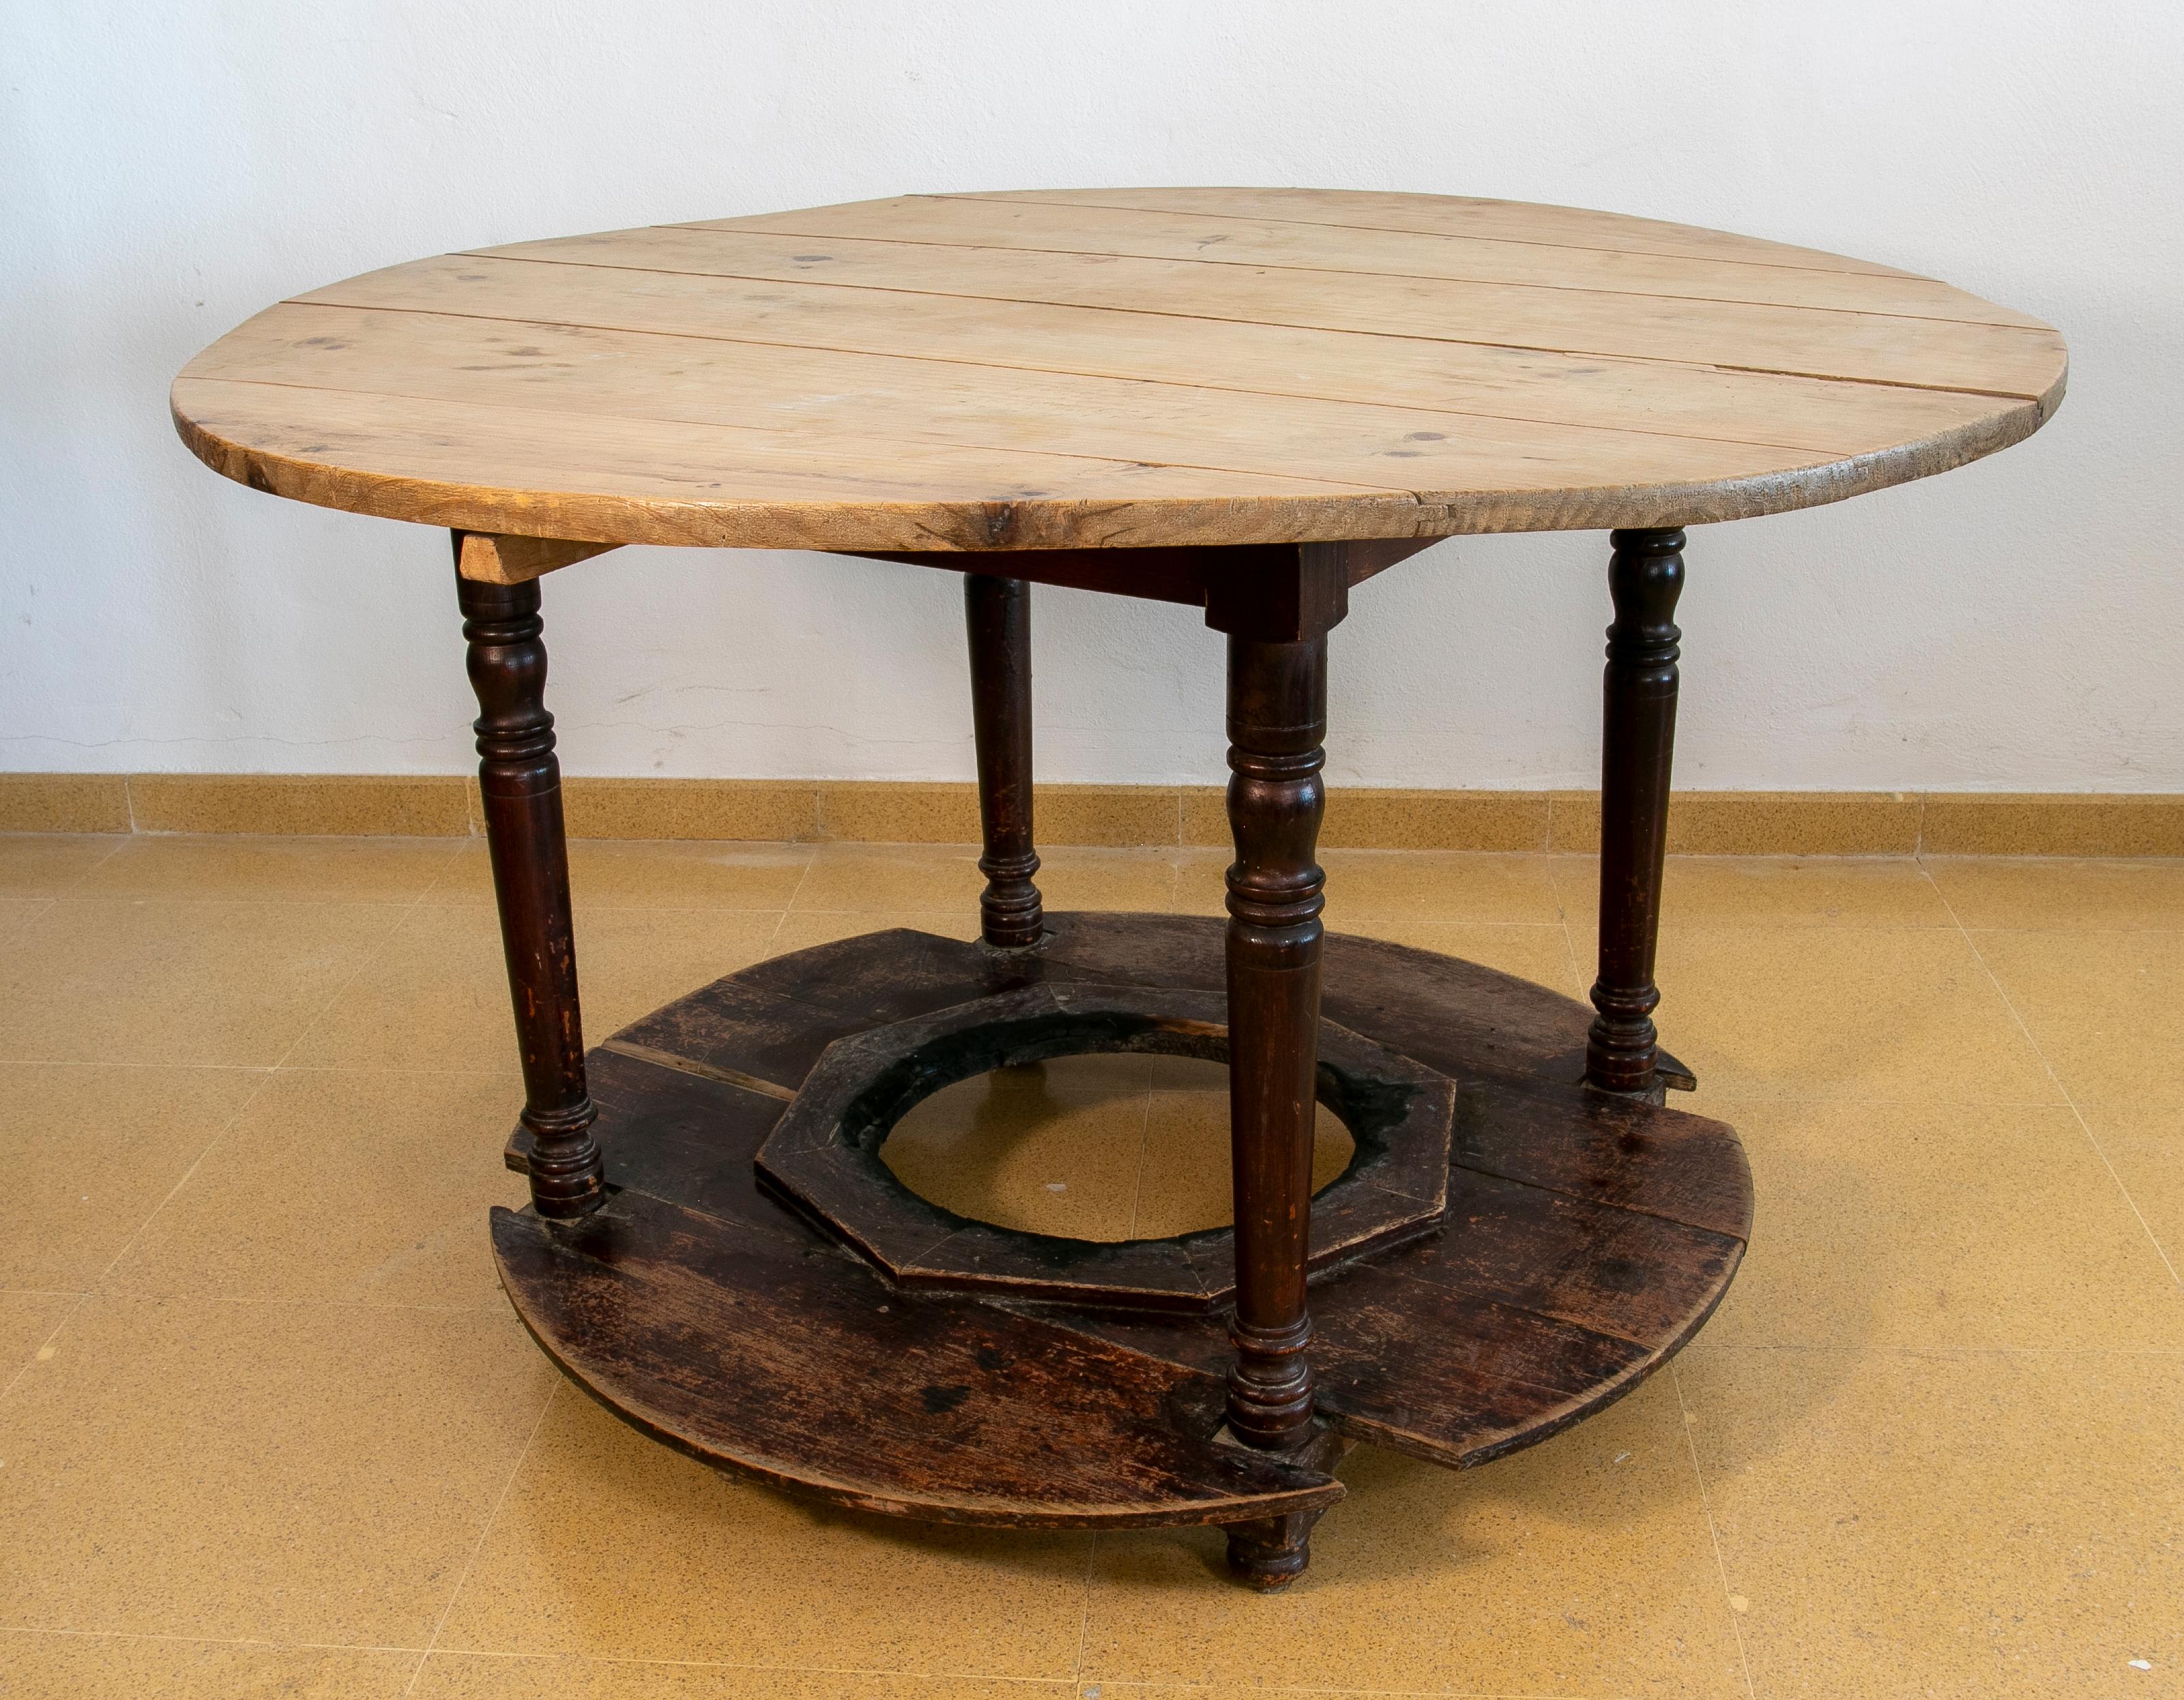 Table ronde en bois typique espagnole pour placer le brasero.